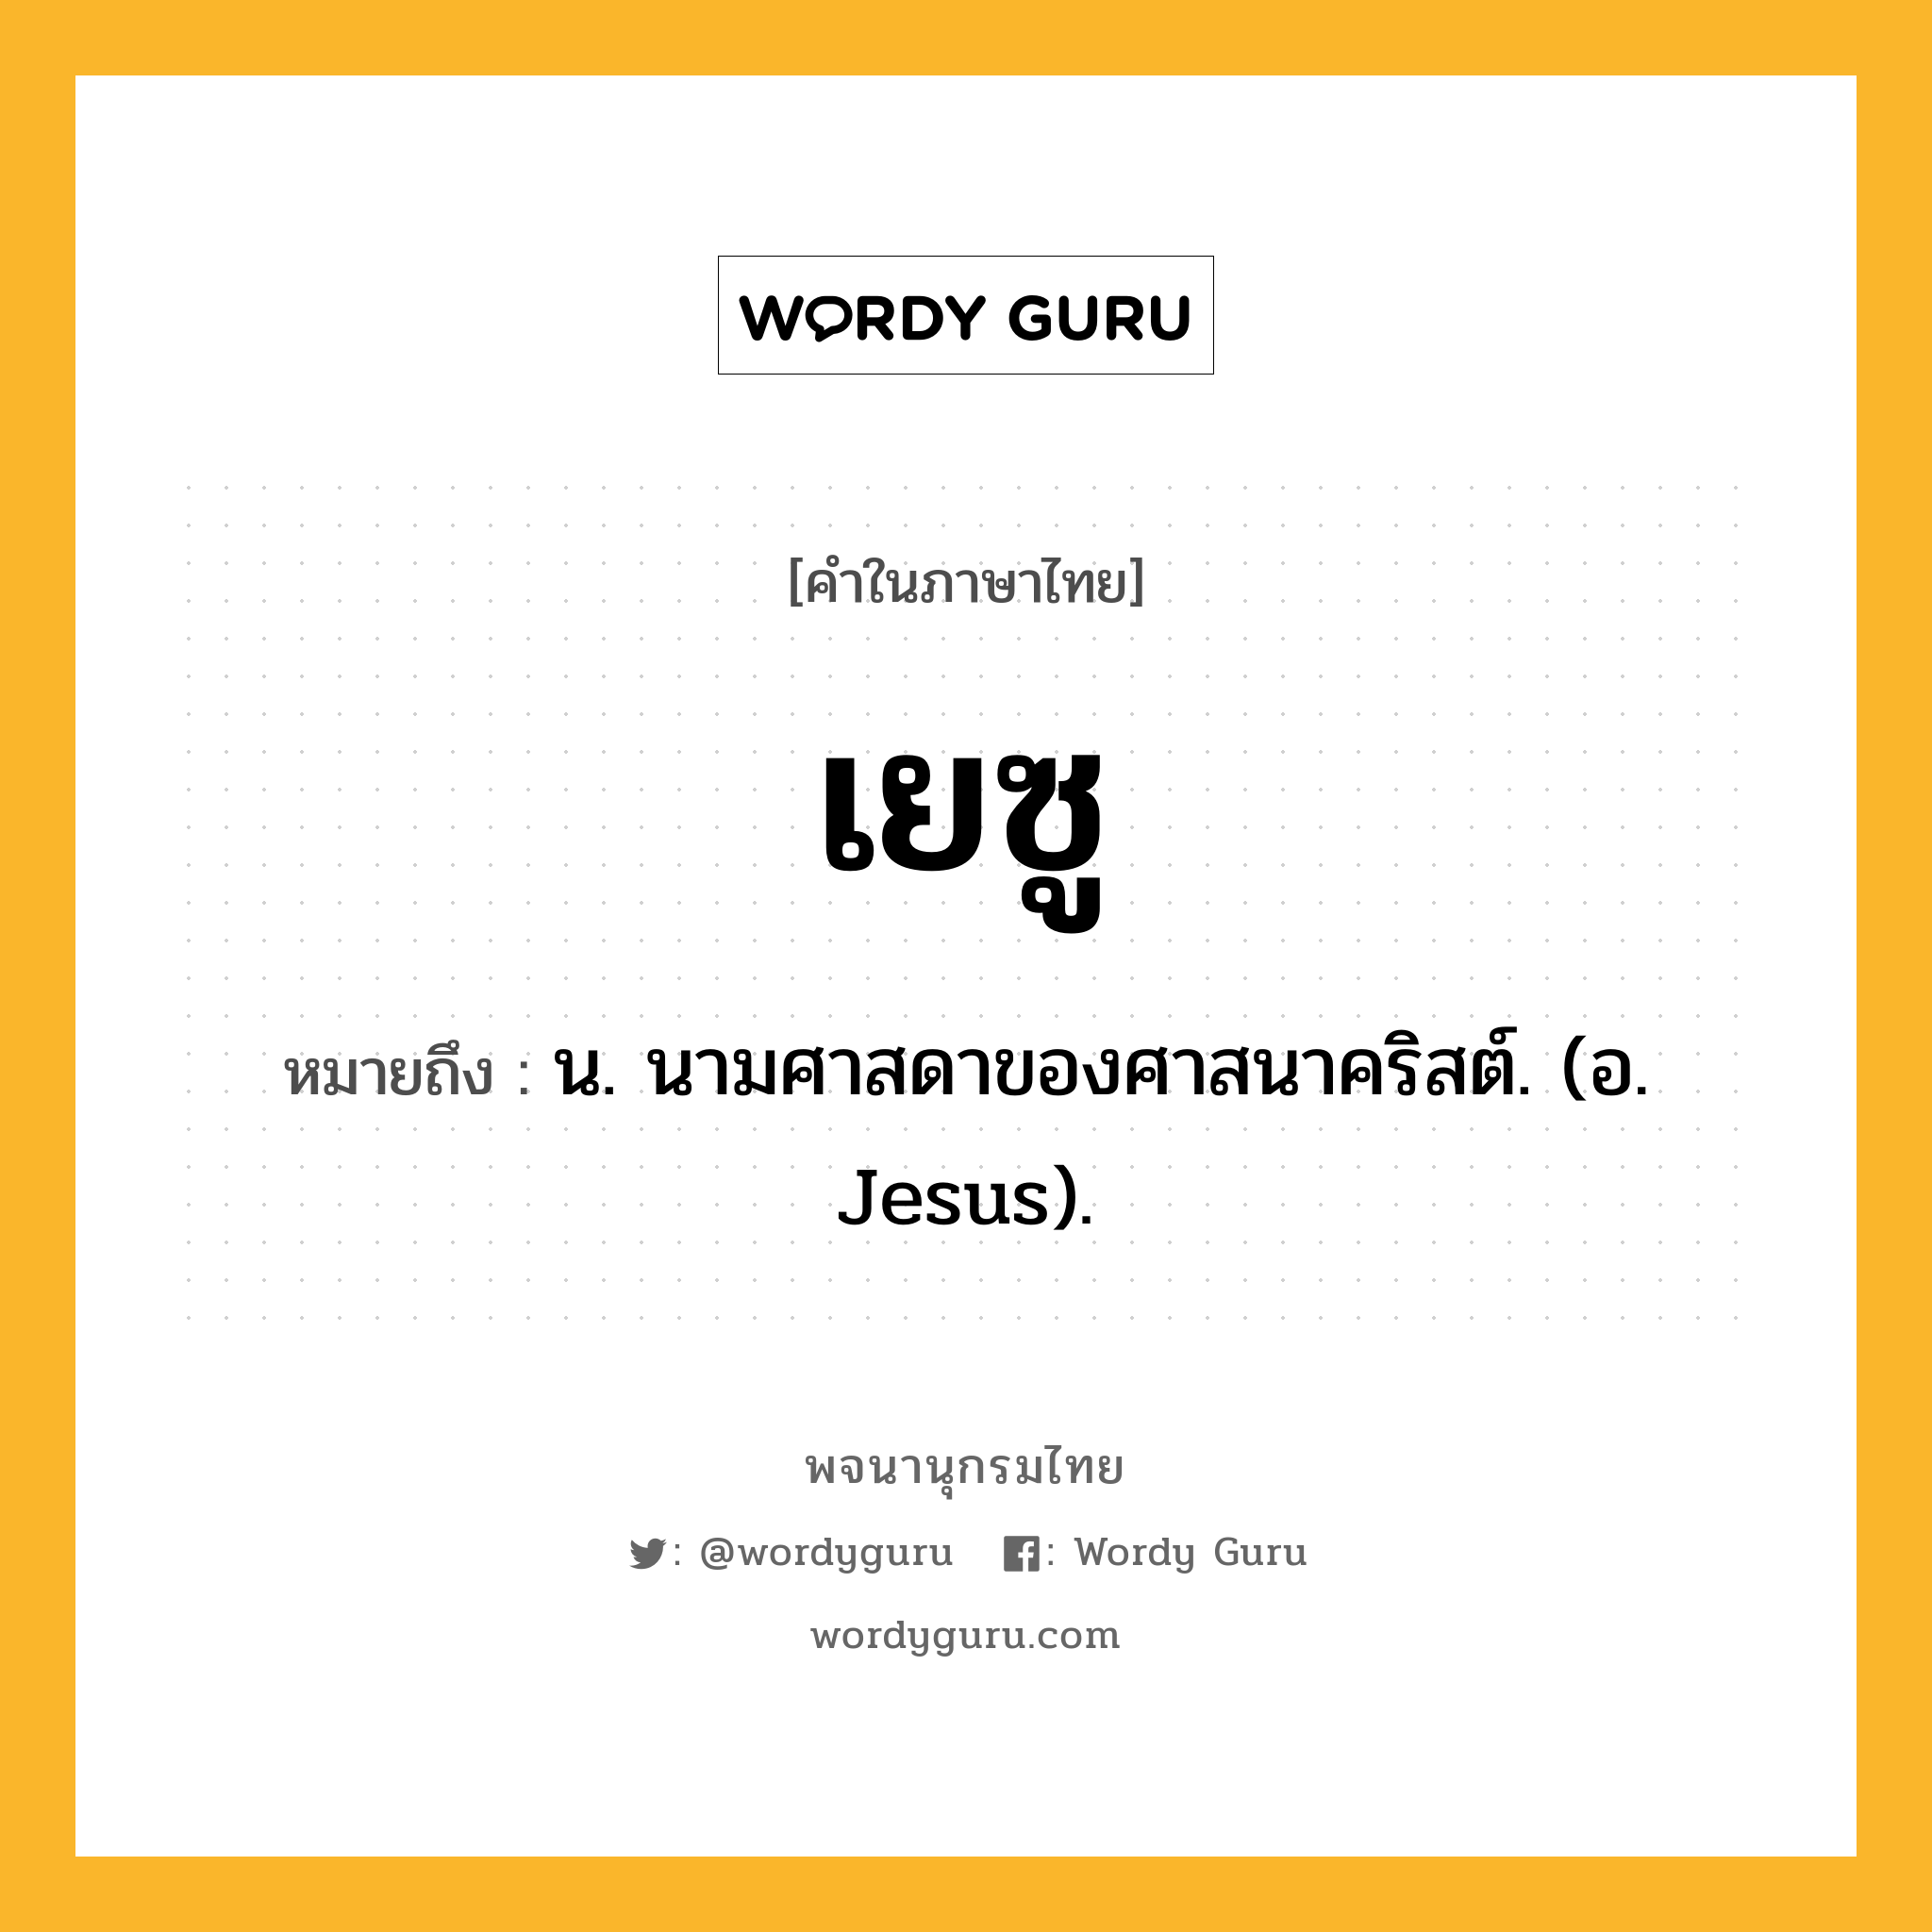 เยซู ความหมาย หมายถึงอะไร?, คำในภาษาไทย เยซู หมายถึง น. นามศาสดาของศาสนาคริสต์. (อ. Jesus).